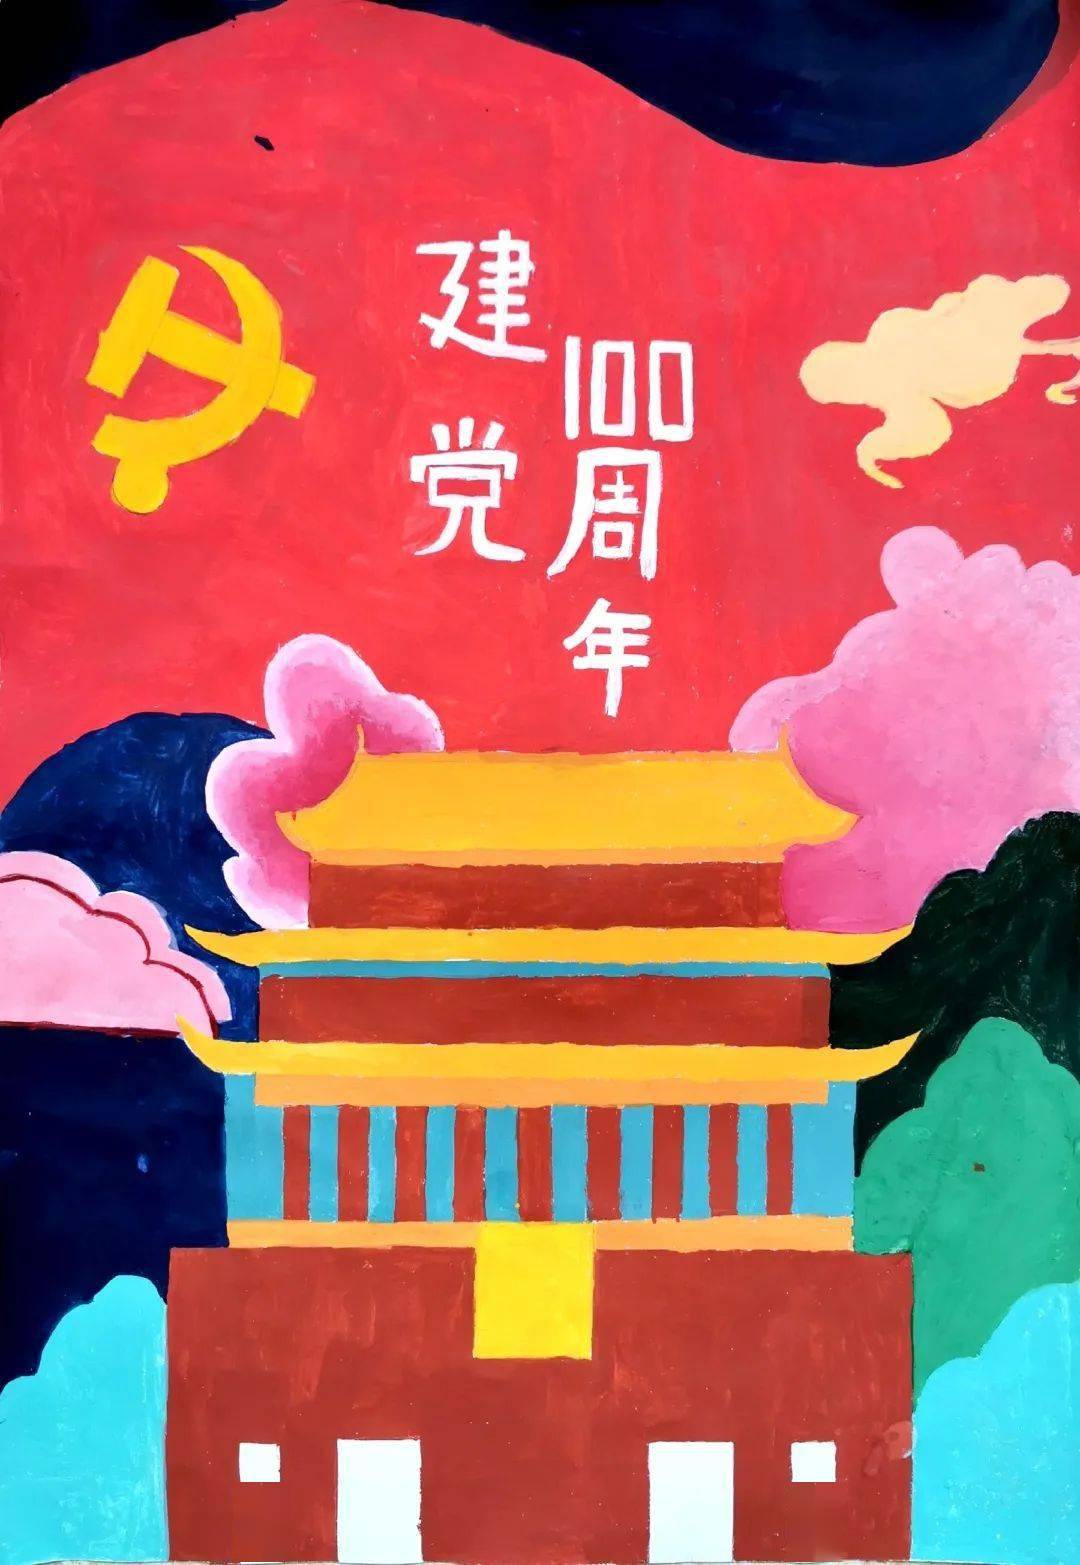 韩悦,牛丽萍 此次活动旨在以绘画的形式向中国共产党献礼,感恩党的